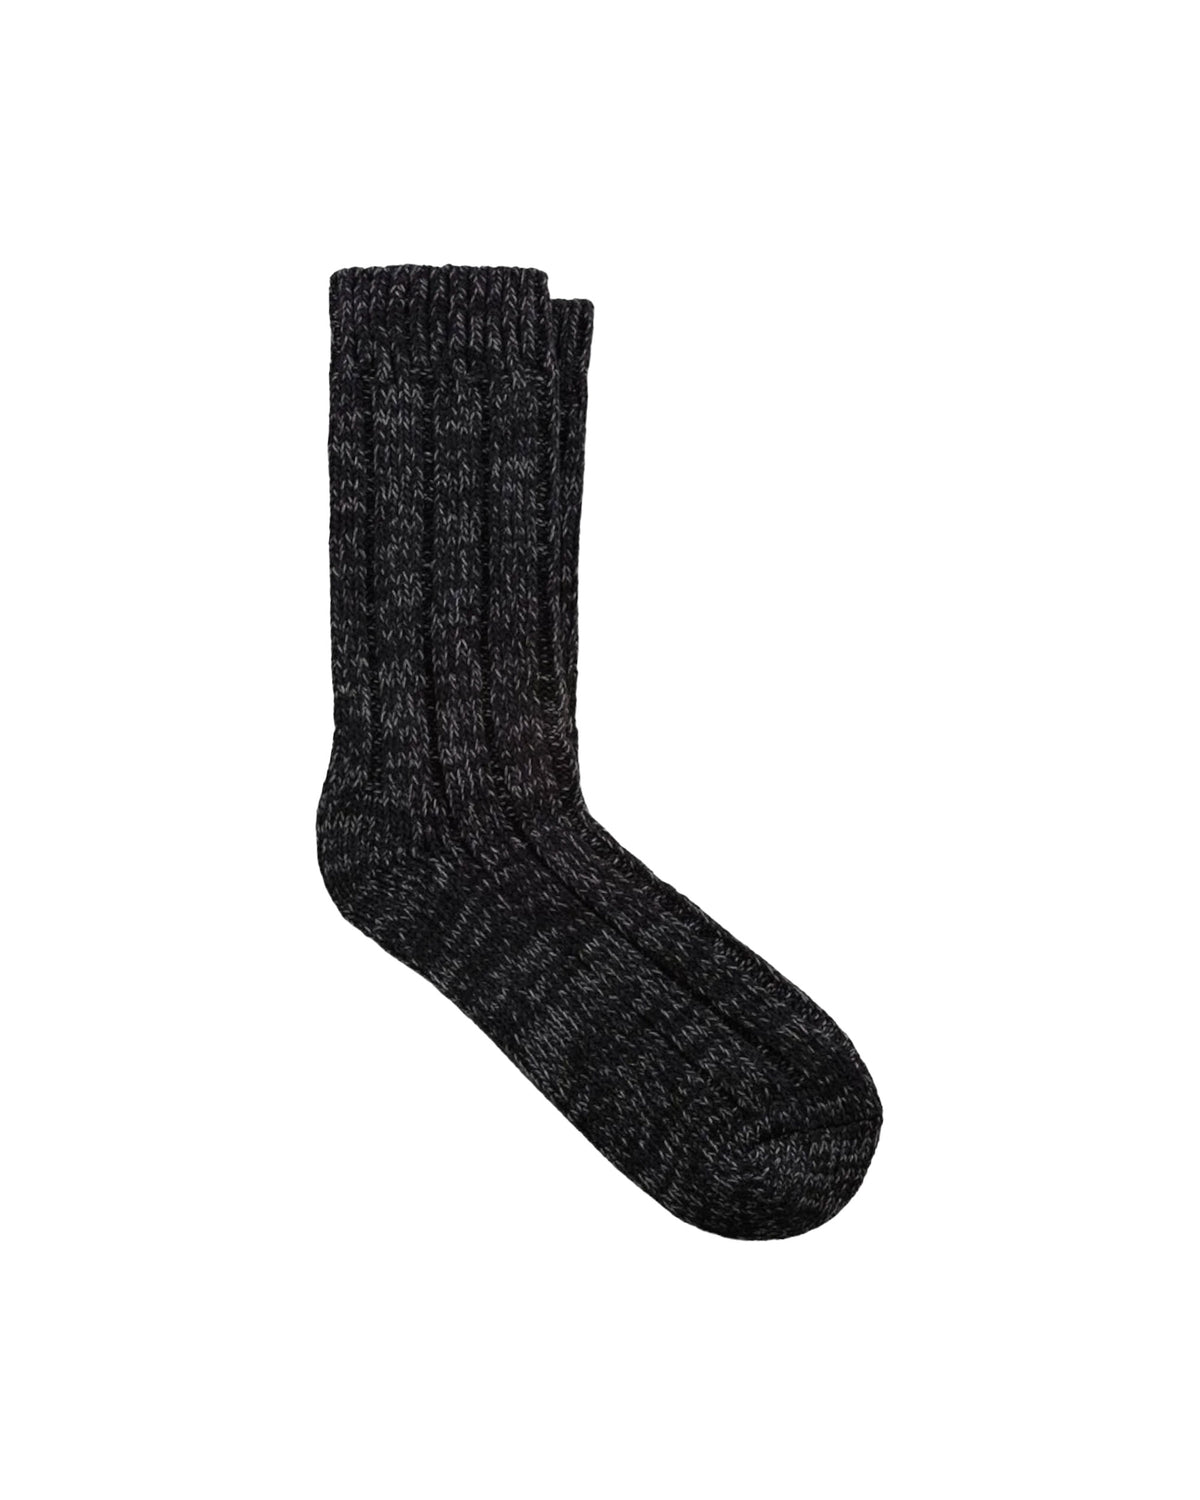 Classic Socks Birkenstock Cotton Twist Black